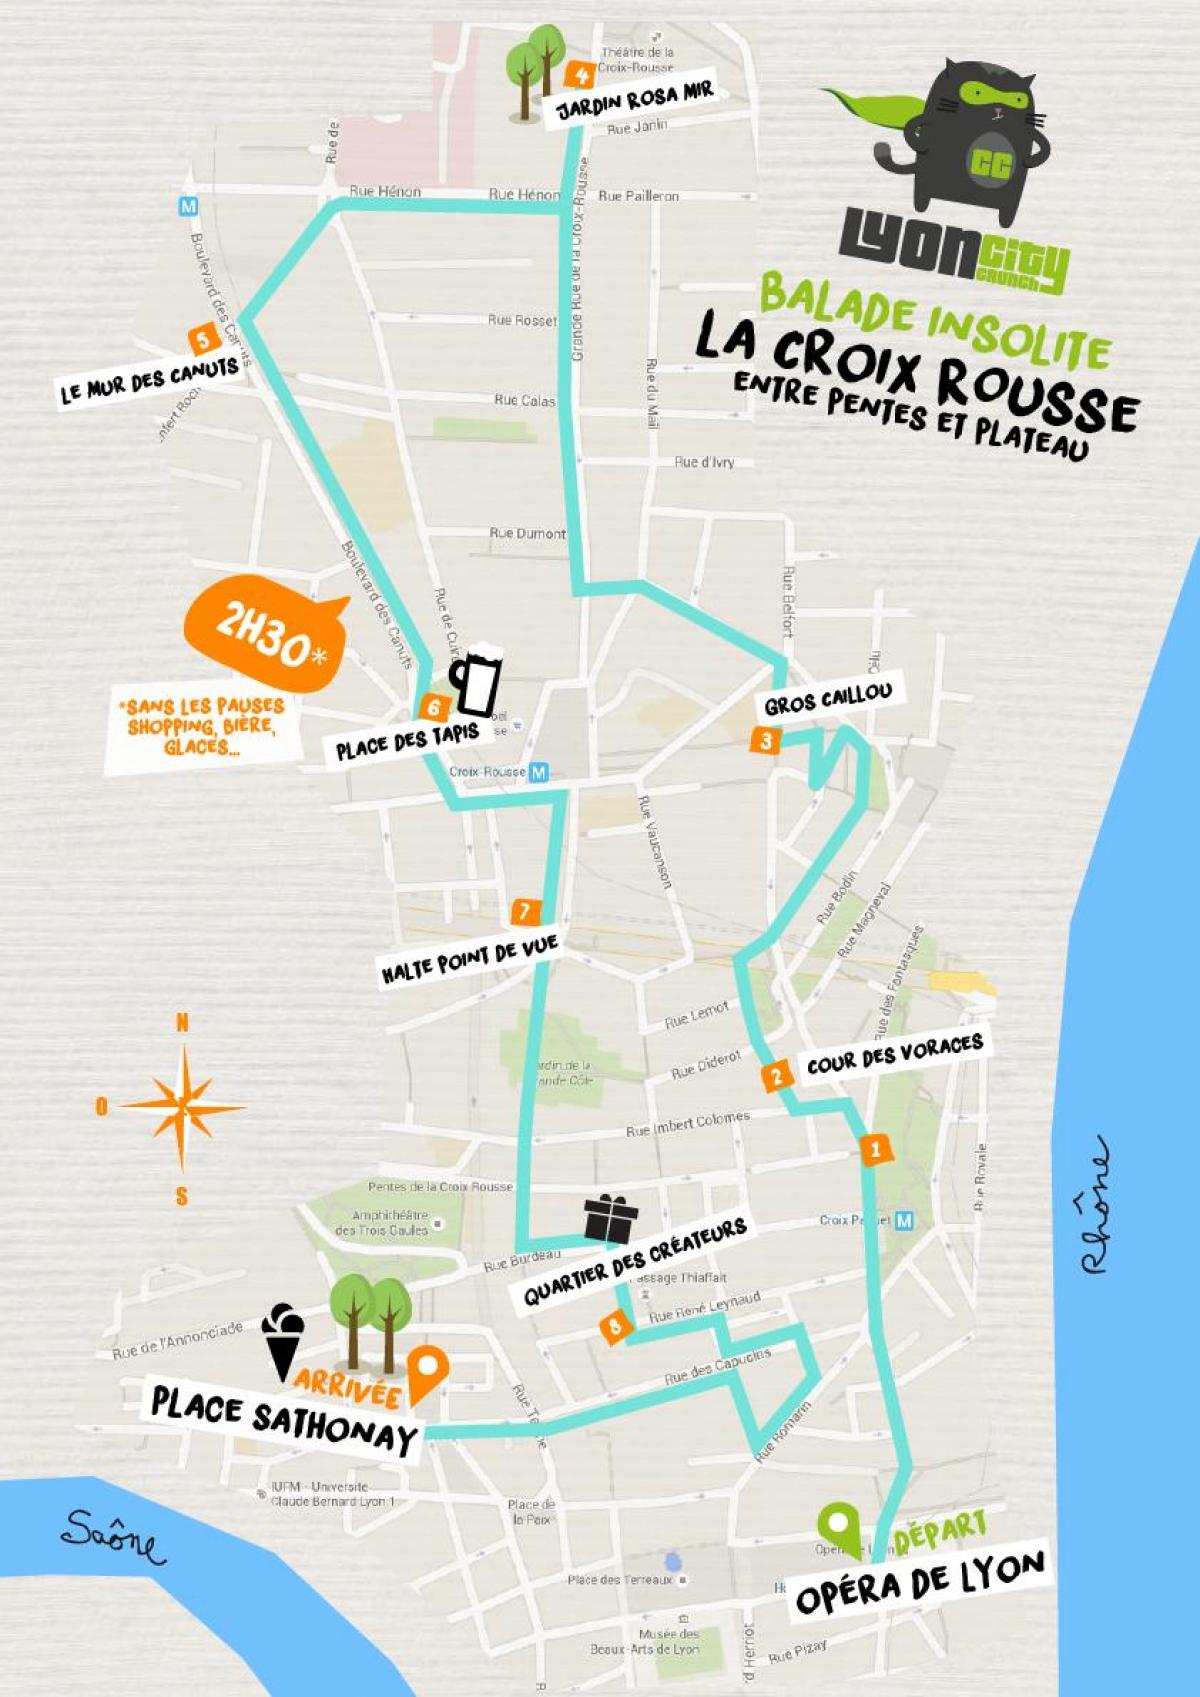 mappa di Lyon croix rousse 